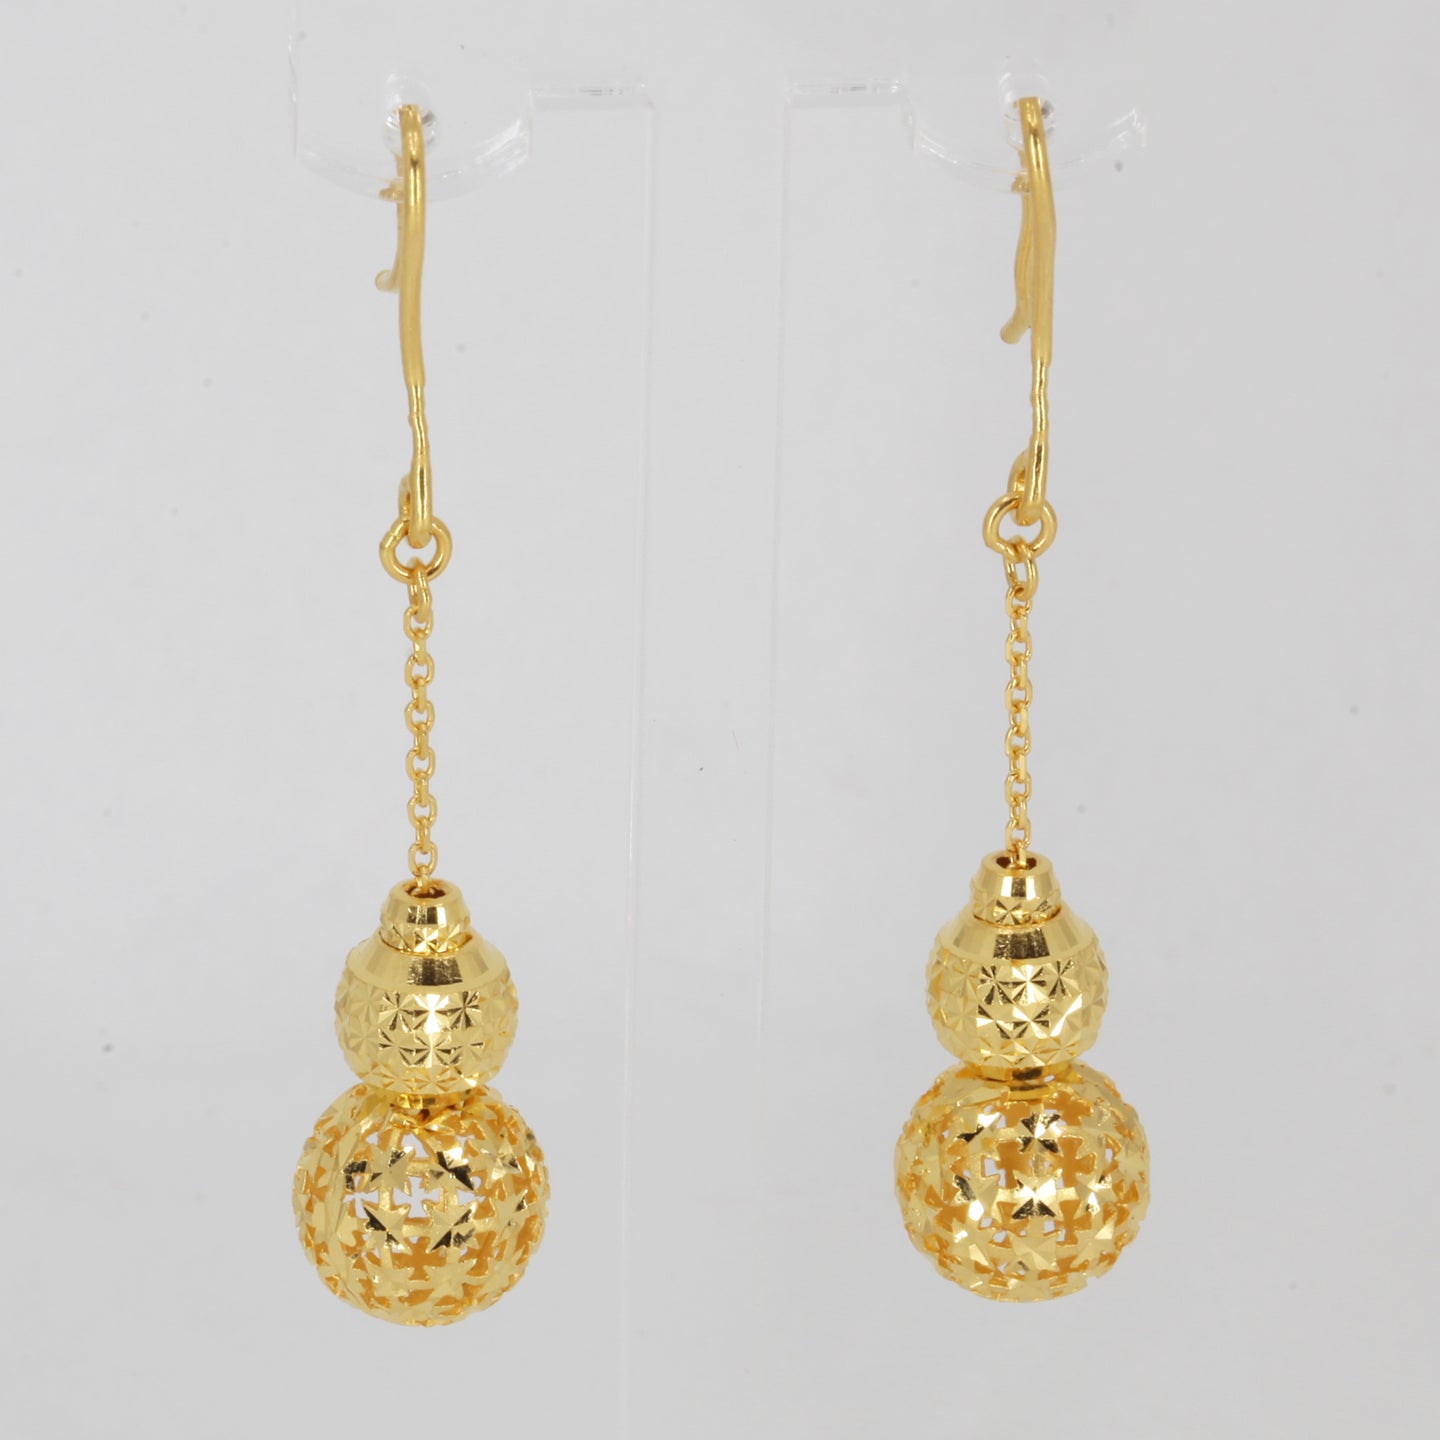 24K Solid Yellow Gold Triple Sphere Hanging Earrings 7.4 Grams